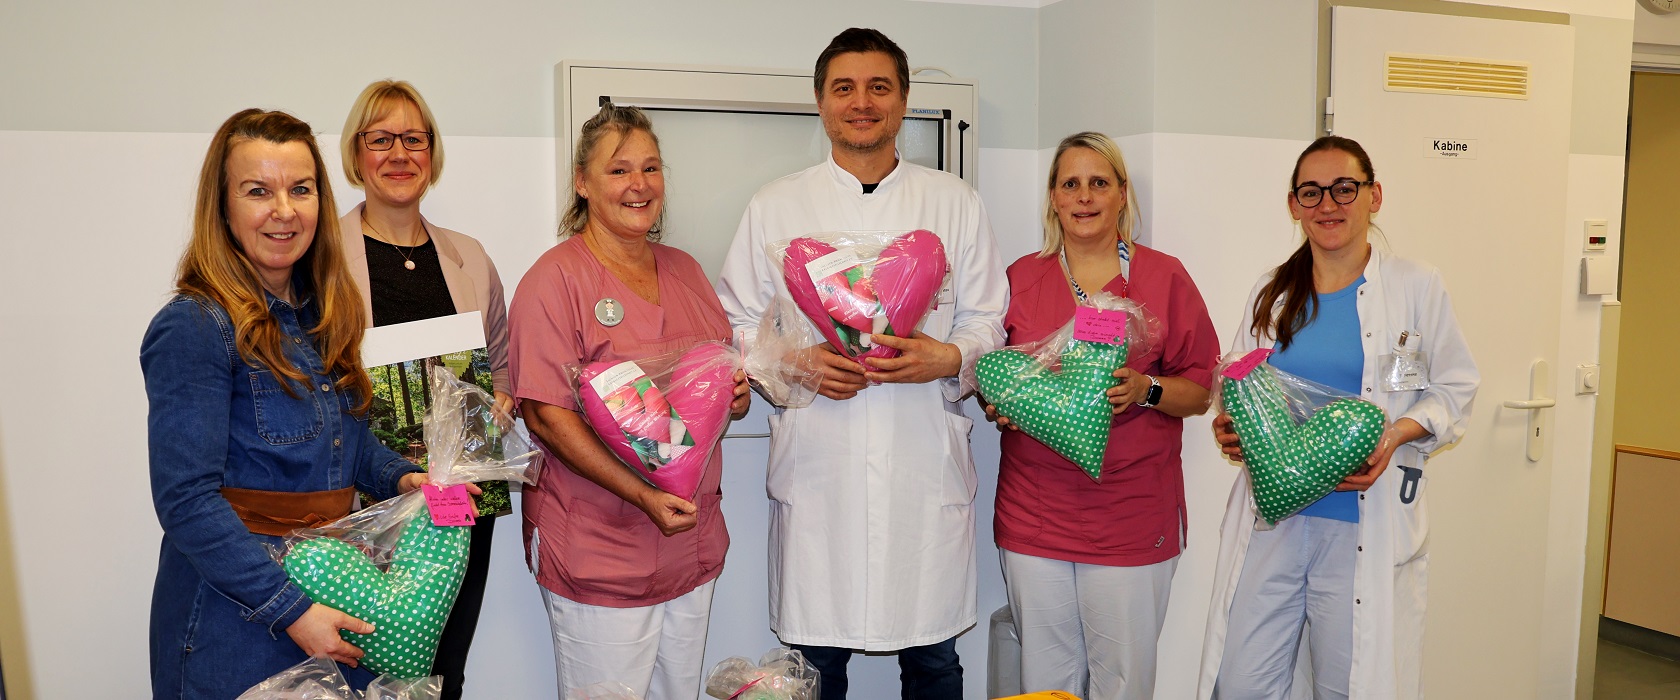 ÖSA Mitarbeiter überreichen selbstgenähte Herzkissen an Mitarbeiter der Universitätsklinik für Frauenheilkunde in Magdeburg